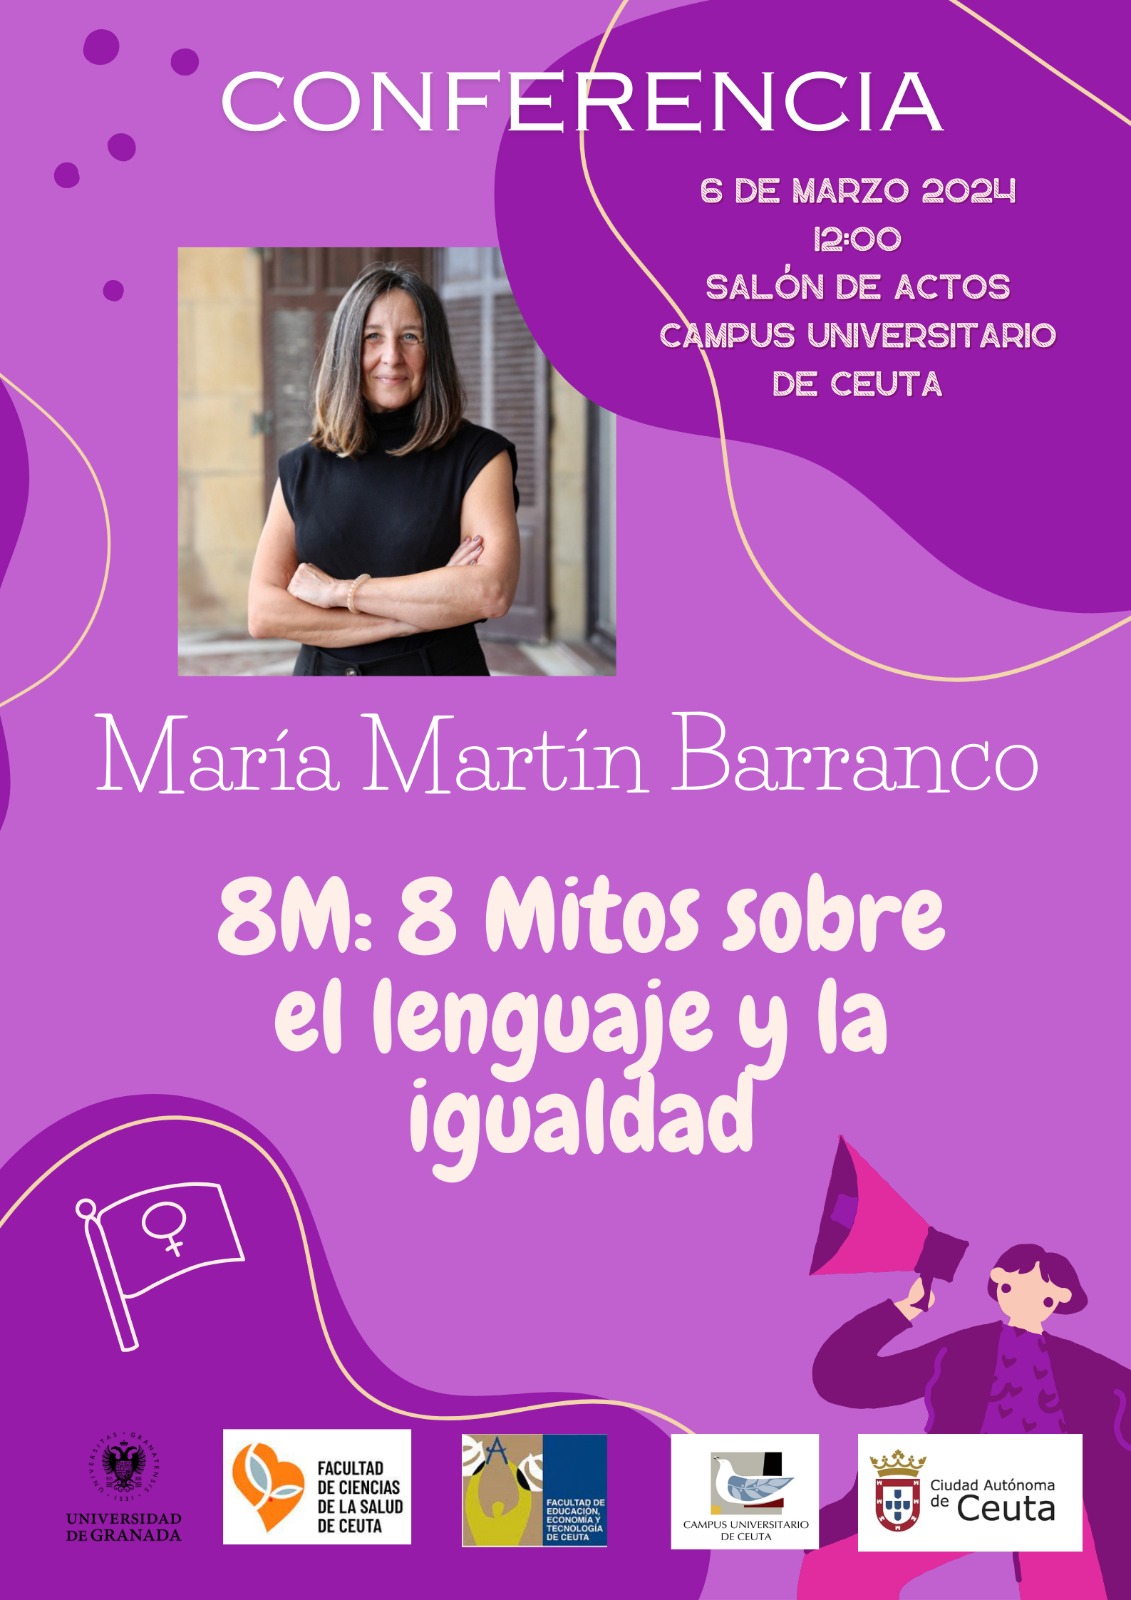 maria-martin-barranco-experta-lenguaje-inclusivo-igualdad